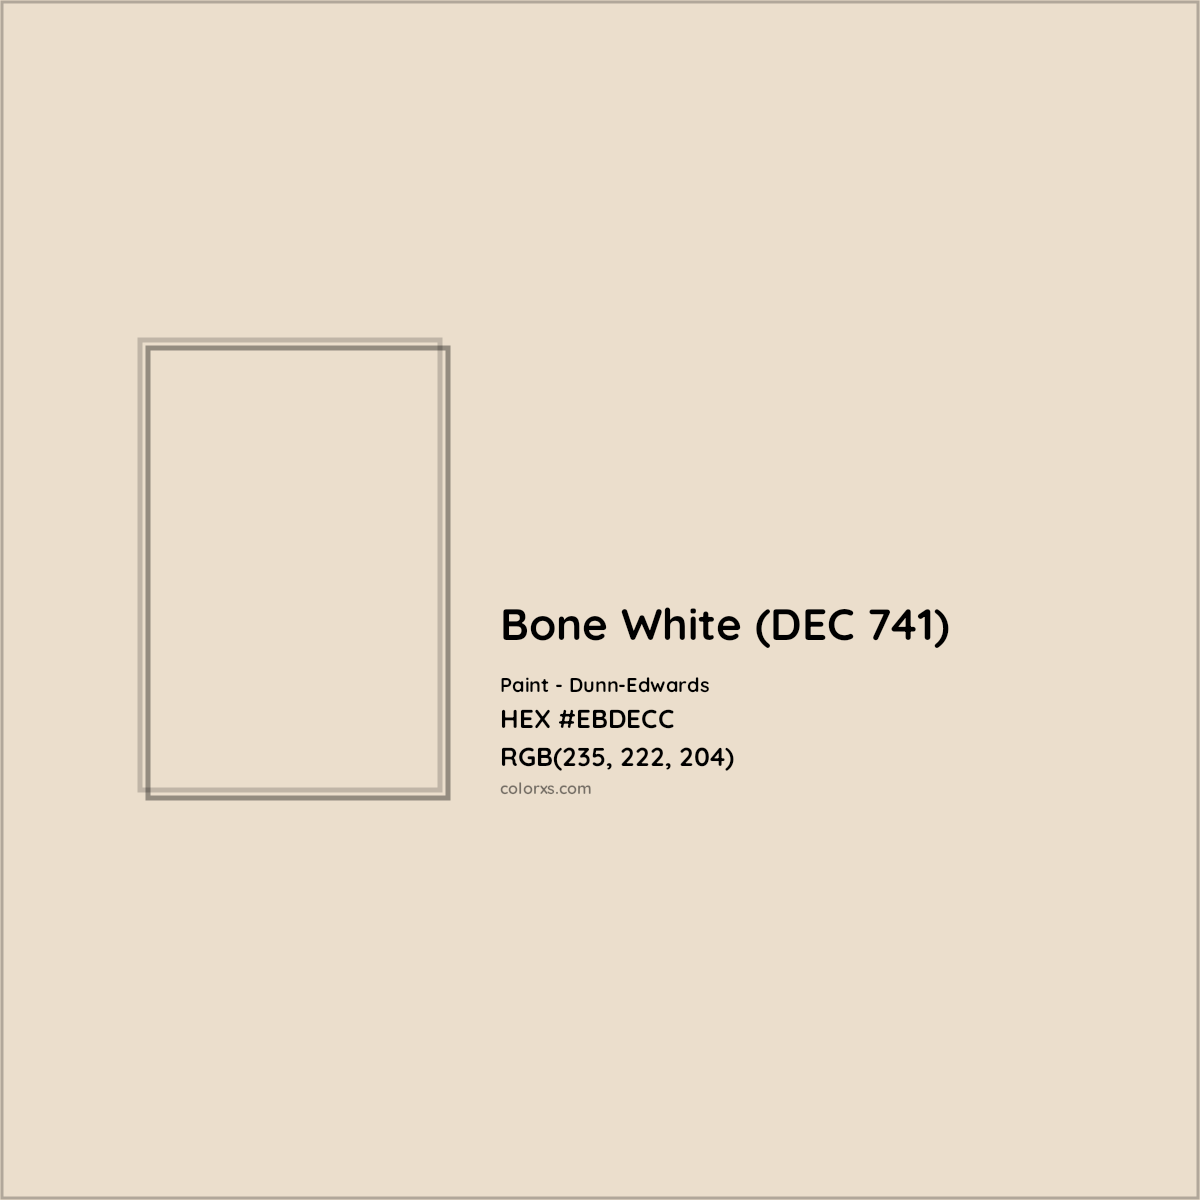 HEX #EBDECC Bone White (DEC 741) Paint Dunn-Edwards - Color Code